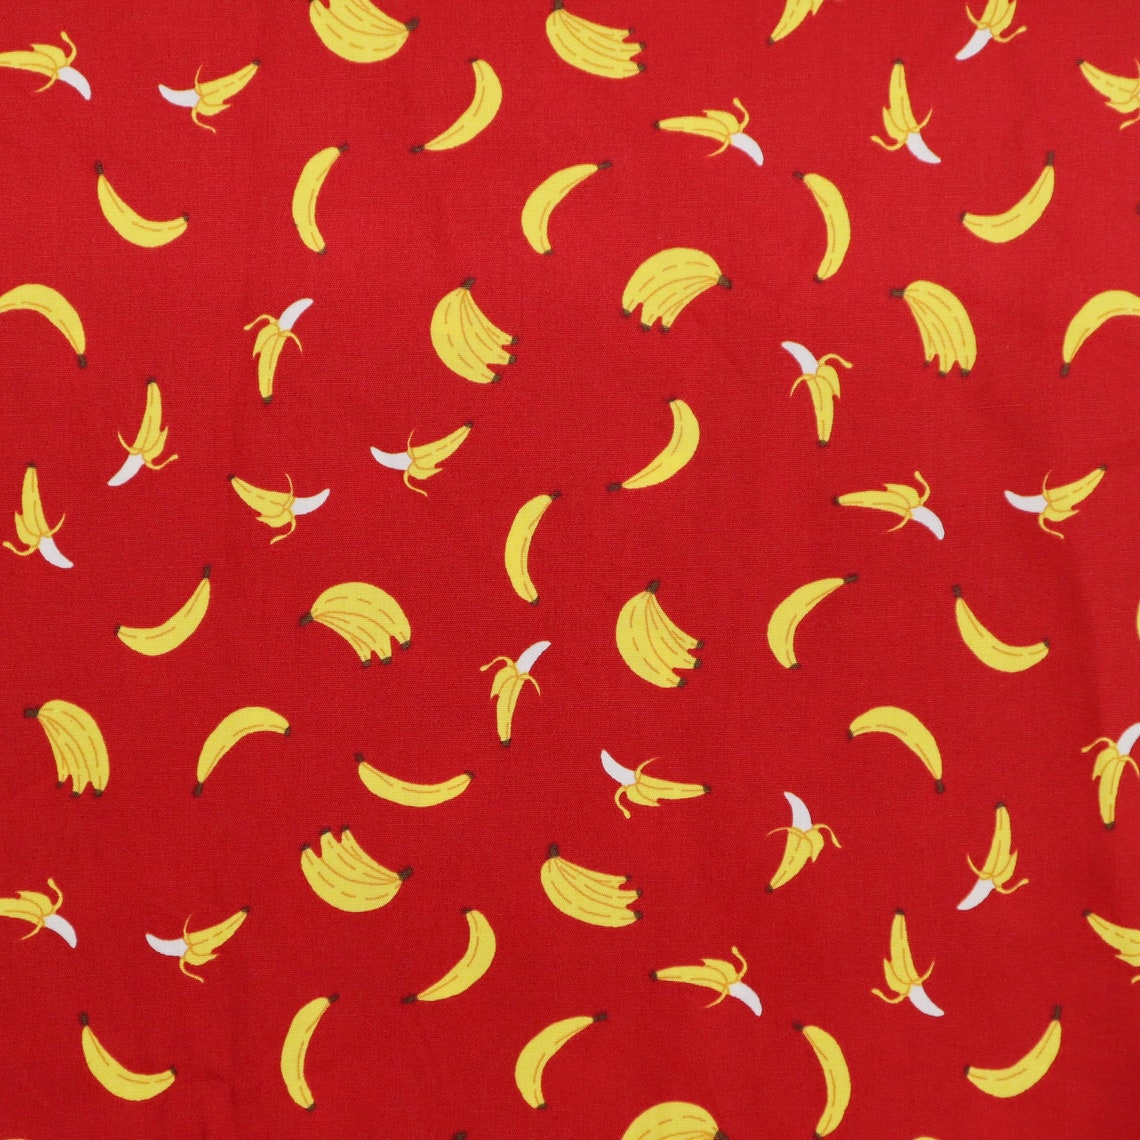 Yellow Banana Fabric Cute Banana Printed on Red Pink | Etsy